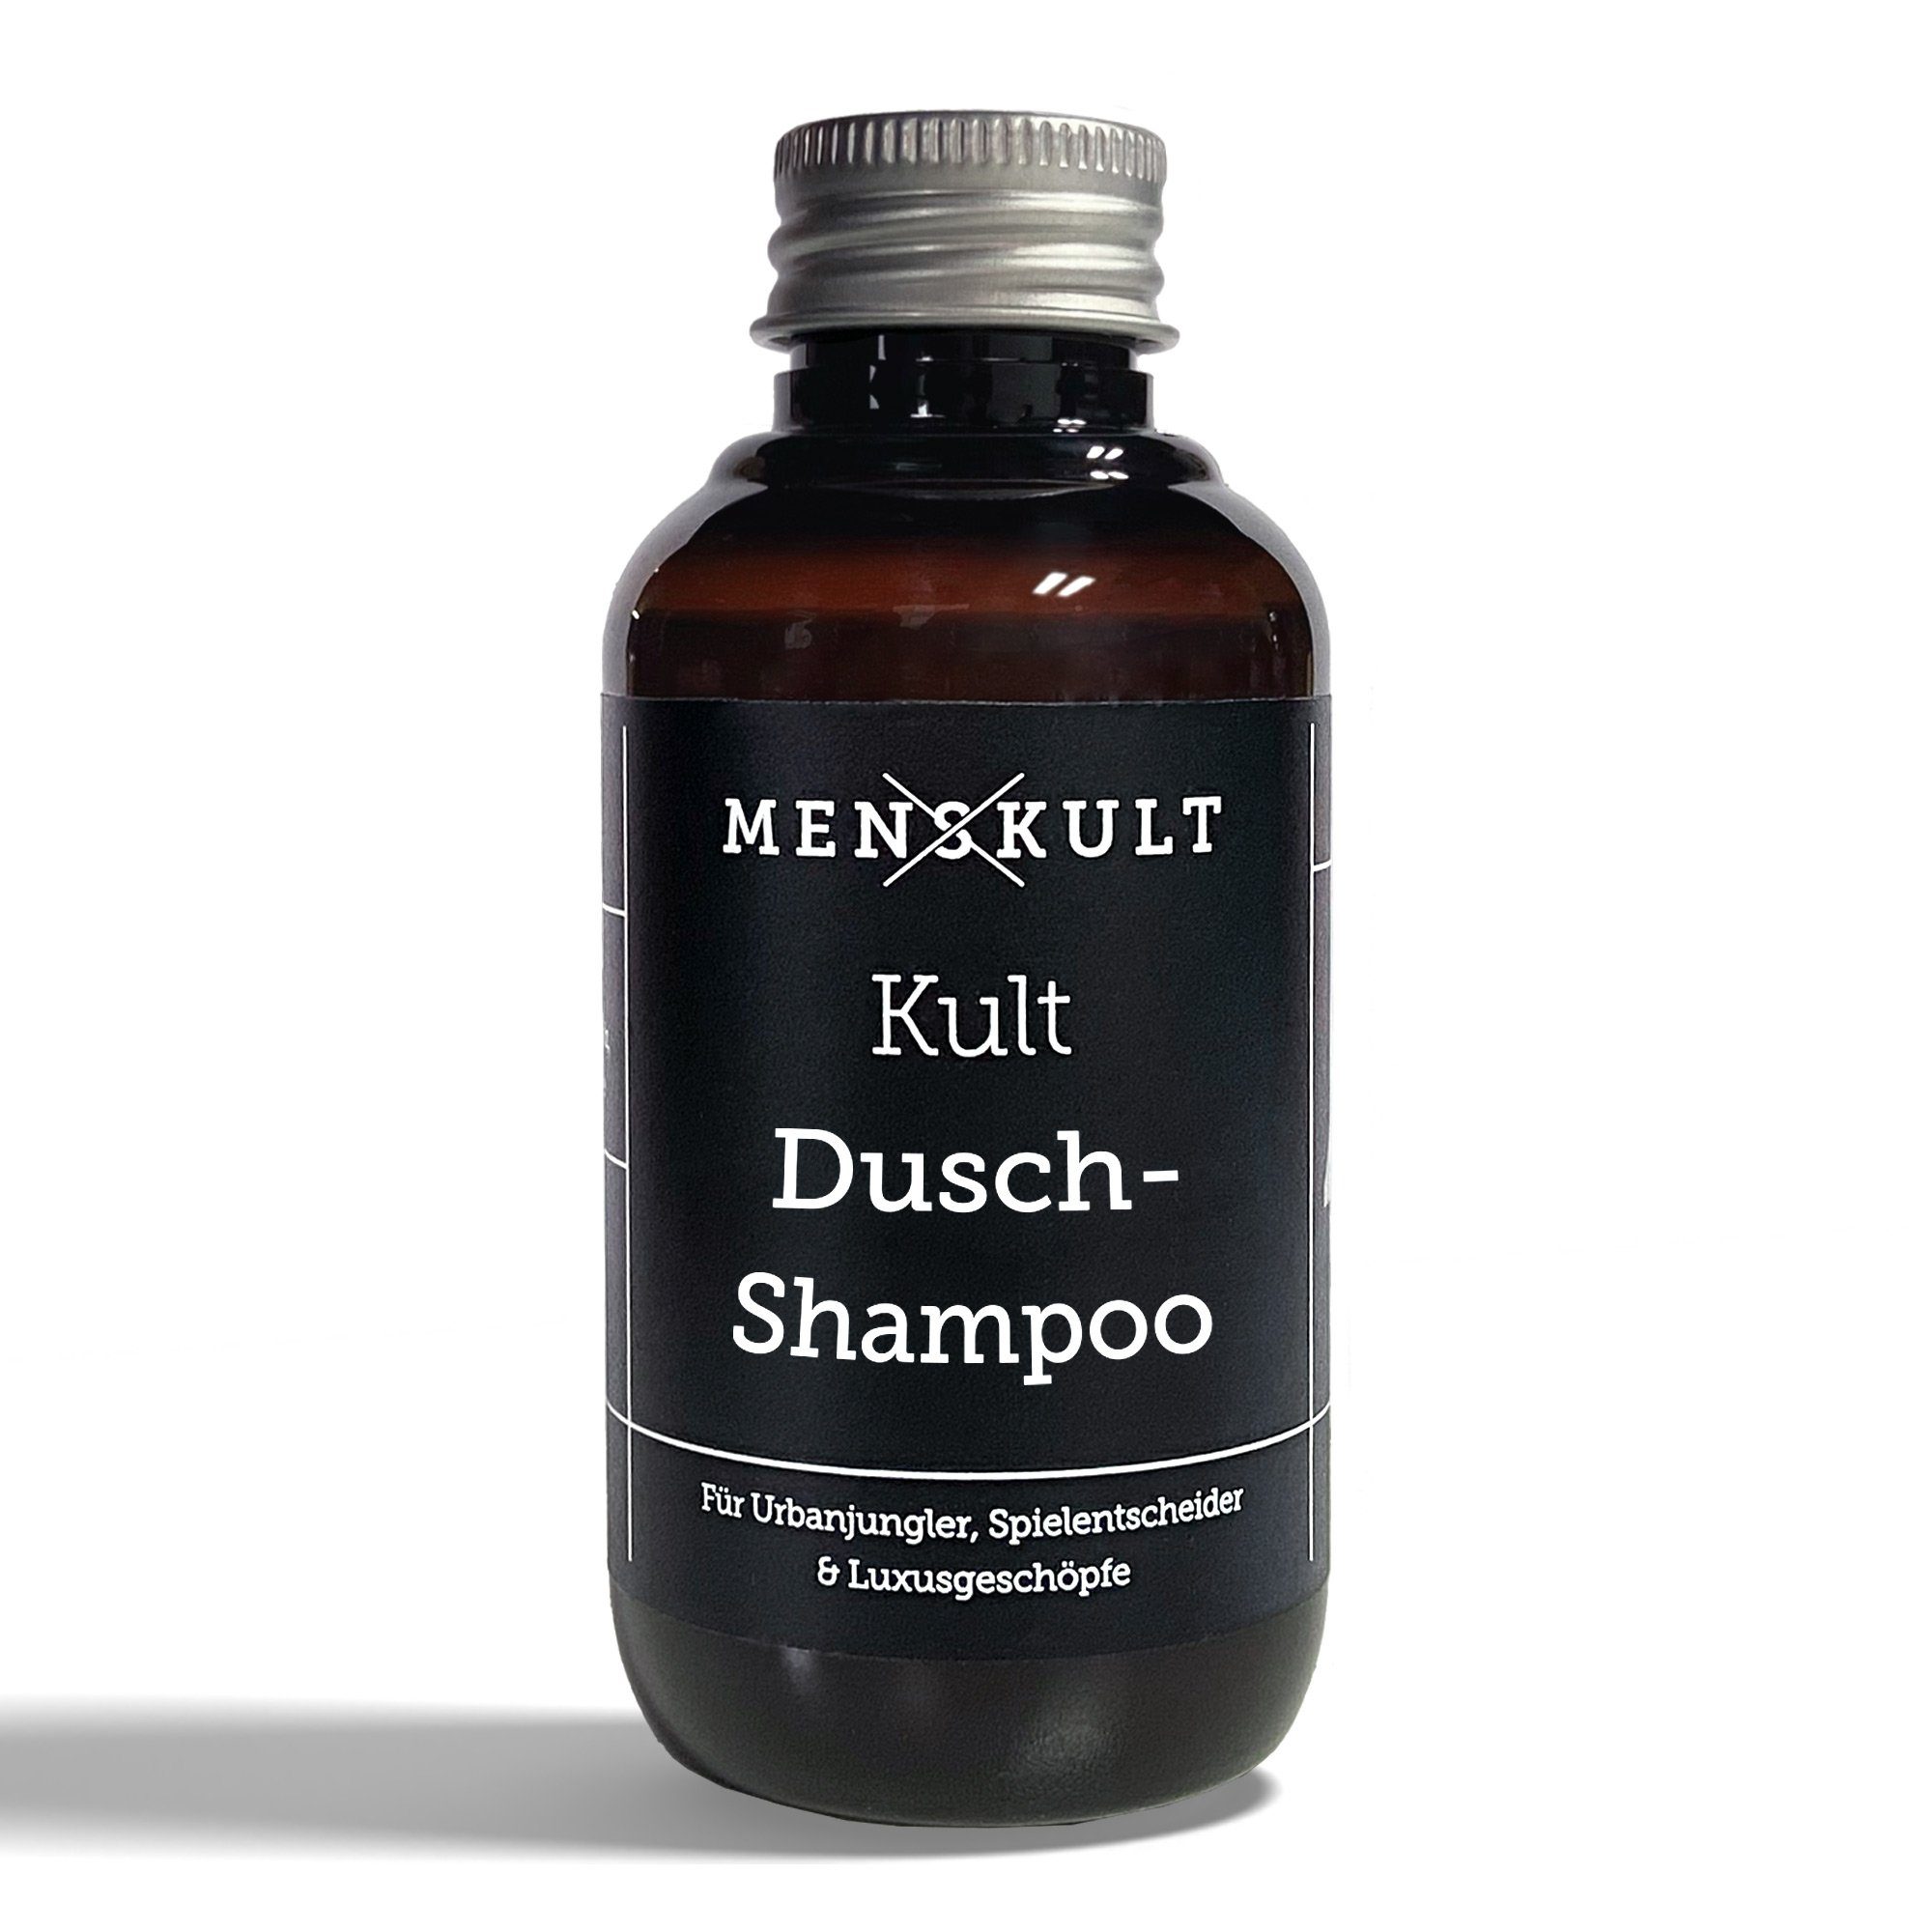 Menskult Haarshampoo Der Dusch-Shampoo, Frischekick für Haut Haar und